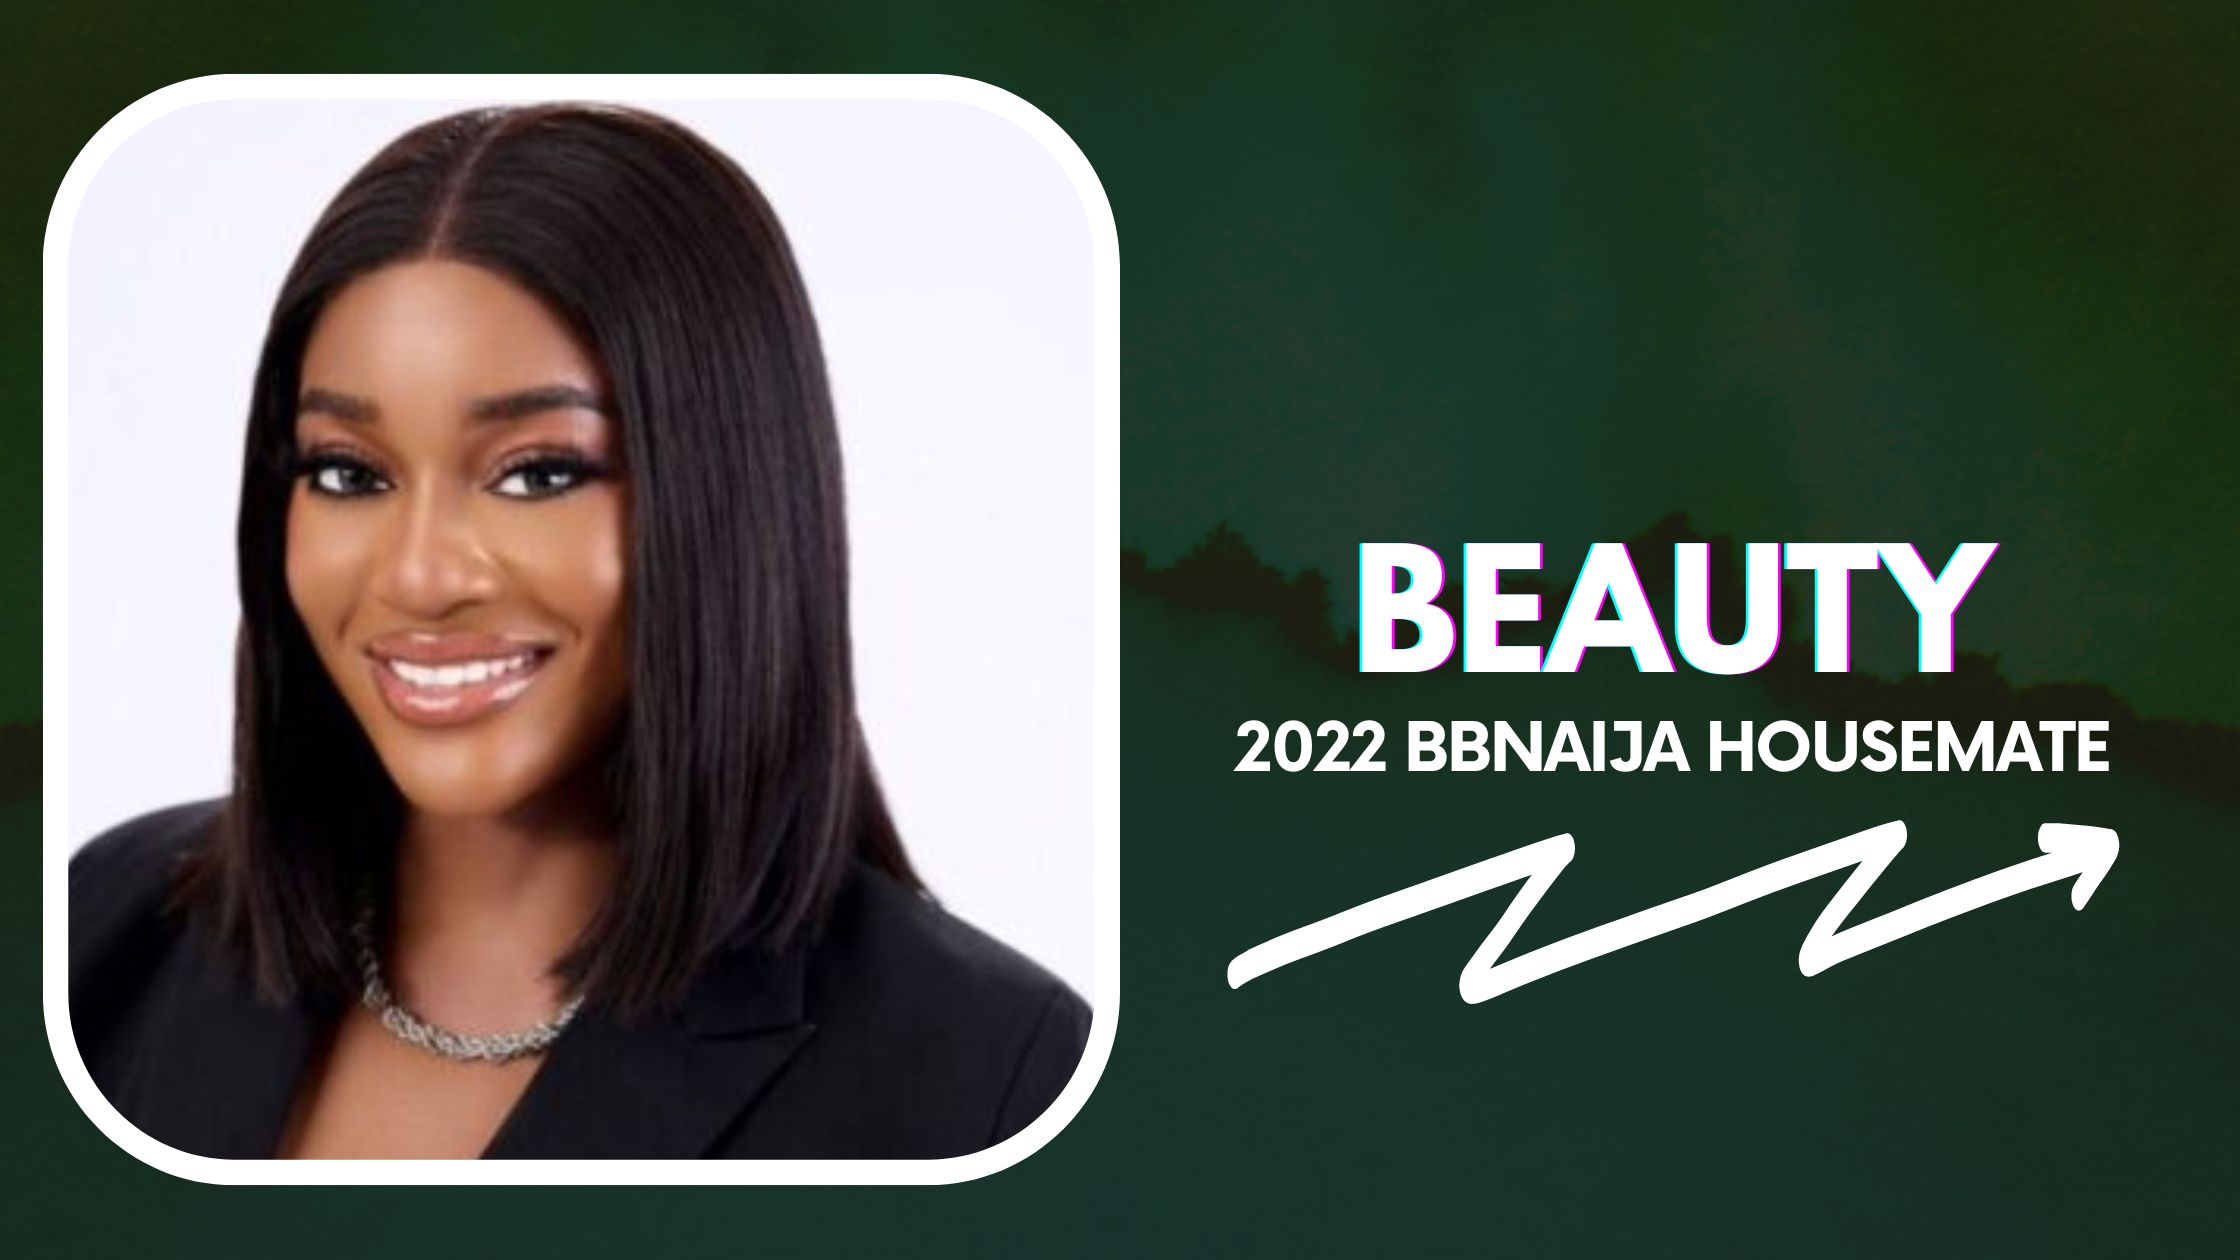 Meet Beauty, 2022 BBNaija Housemate